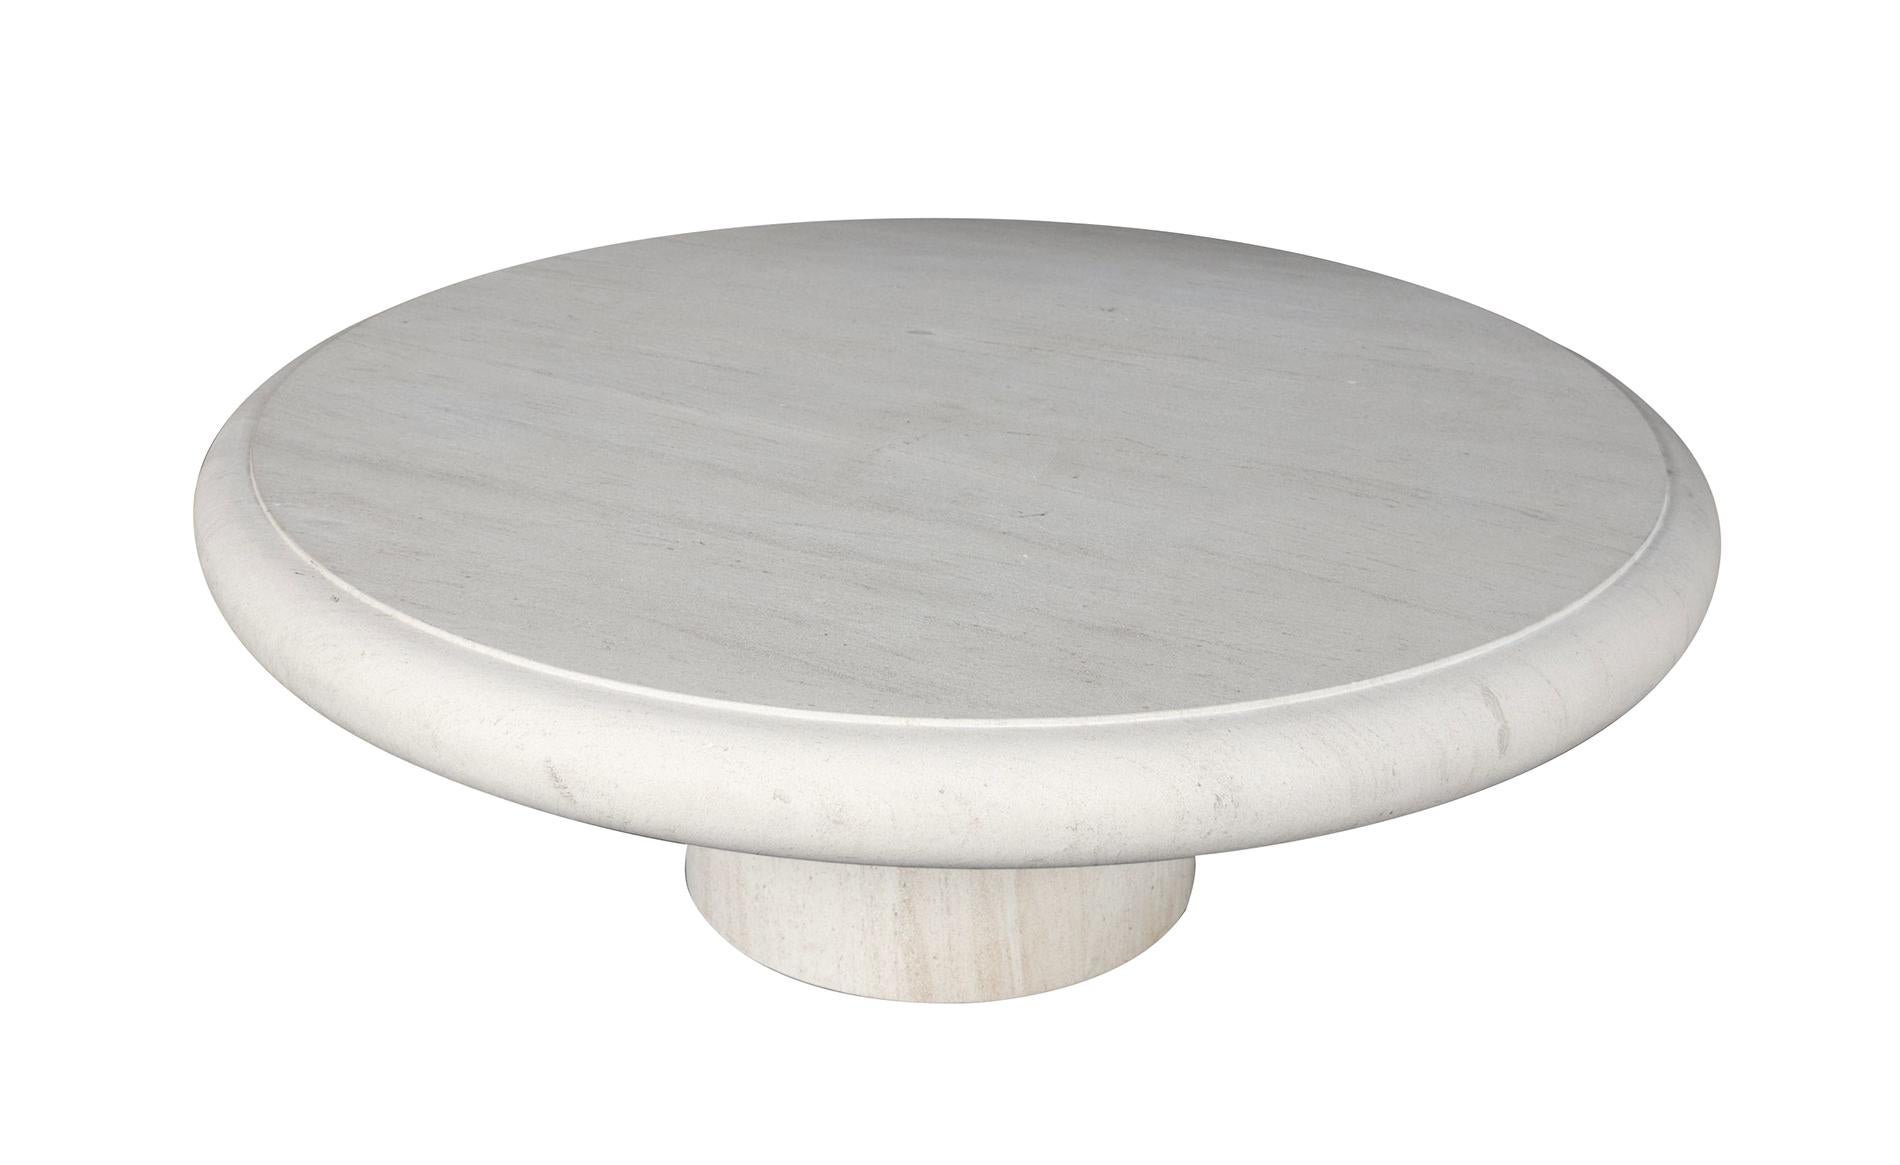 Fabriquée en France à partir de pierre calcaire française, la table se compose d'un épais plateau rond à bord arrondi et d'une base circulaire graduée. Neuve avec seulement une usure minimale attendue ; la table est idéale pour les projets